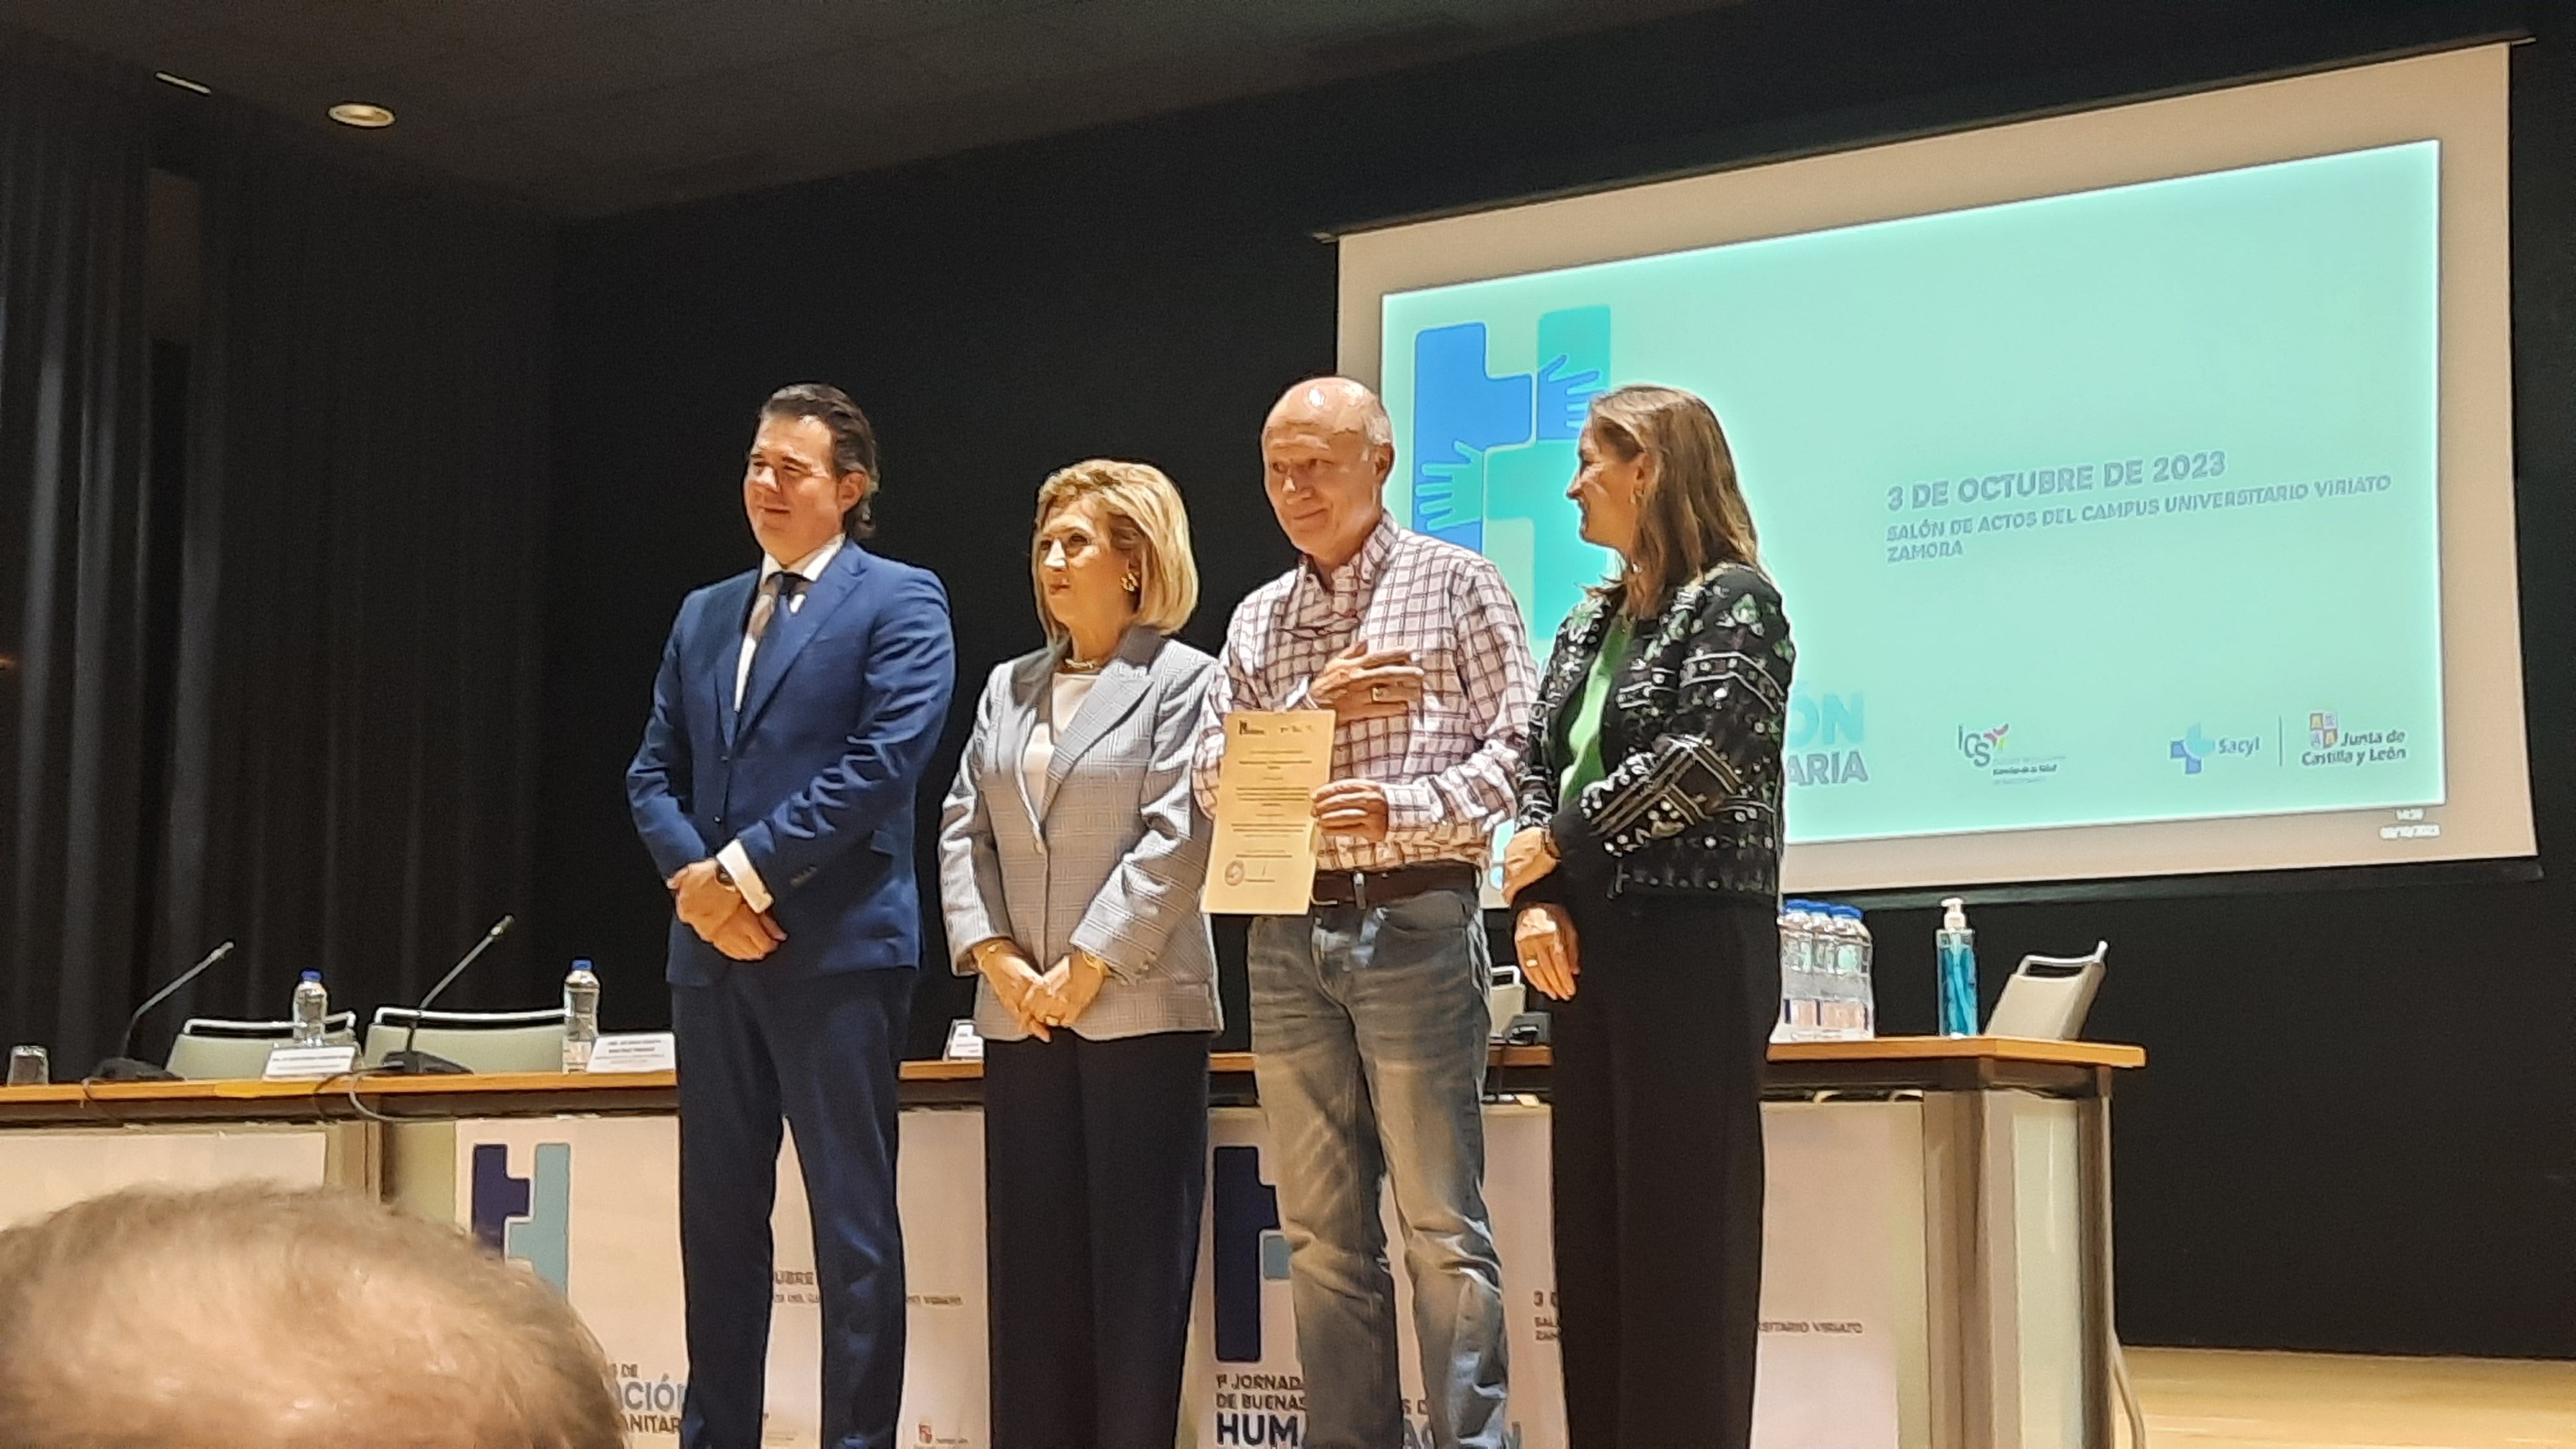 La entrega de premios tuvo lugar en Zamora. | L.N.C.